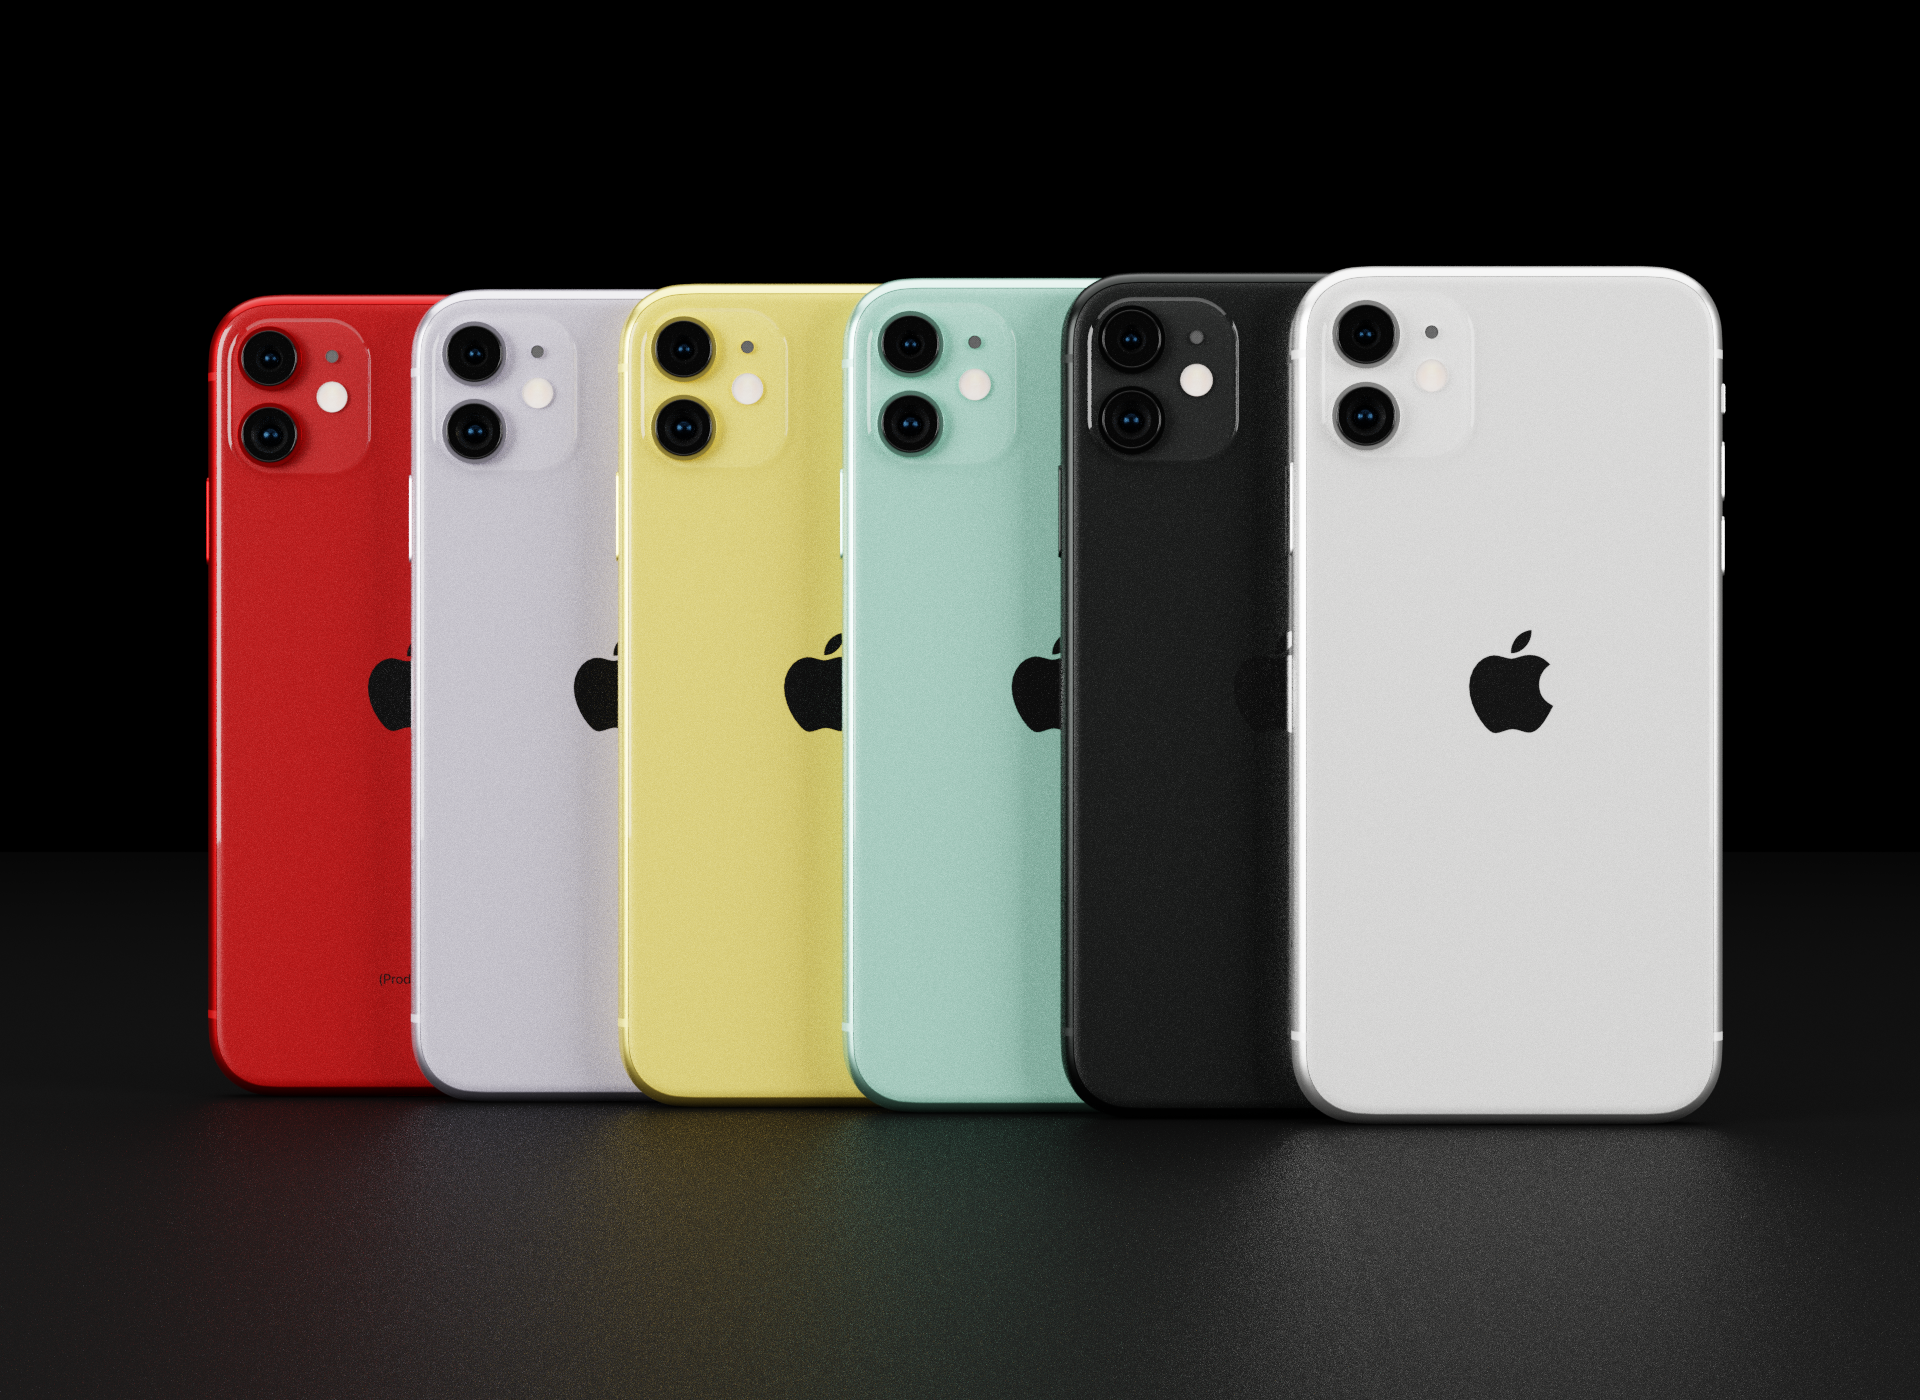 Đây là mẫu iPhone chính hãng phá giá chưa từng có tại Việt Nam, chỉ cần 10 triệu đồng có ngay máy mới! - Ảnh 4.